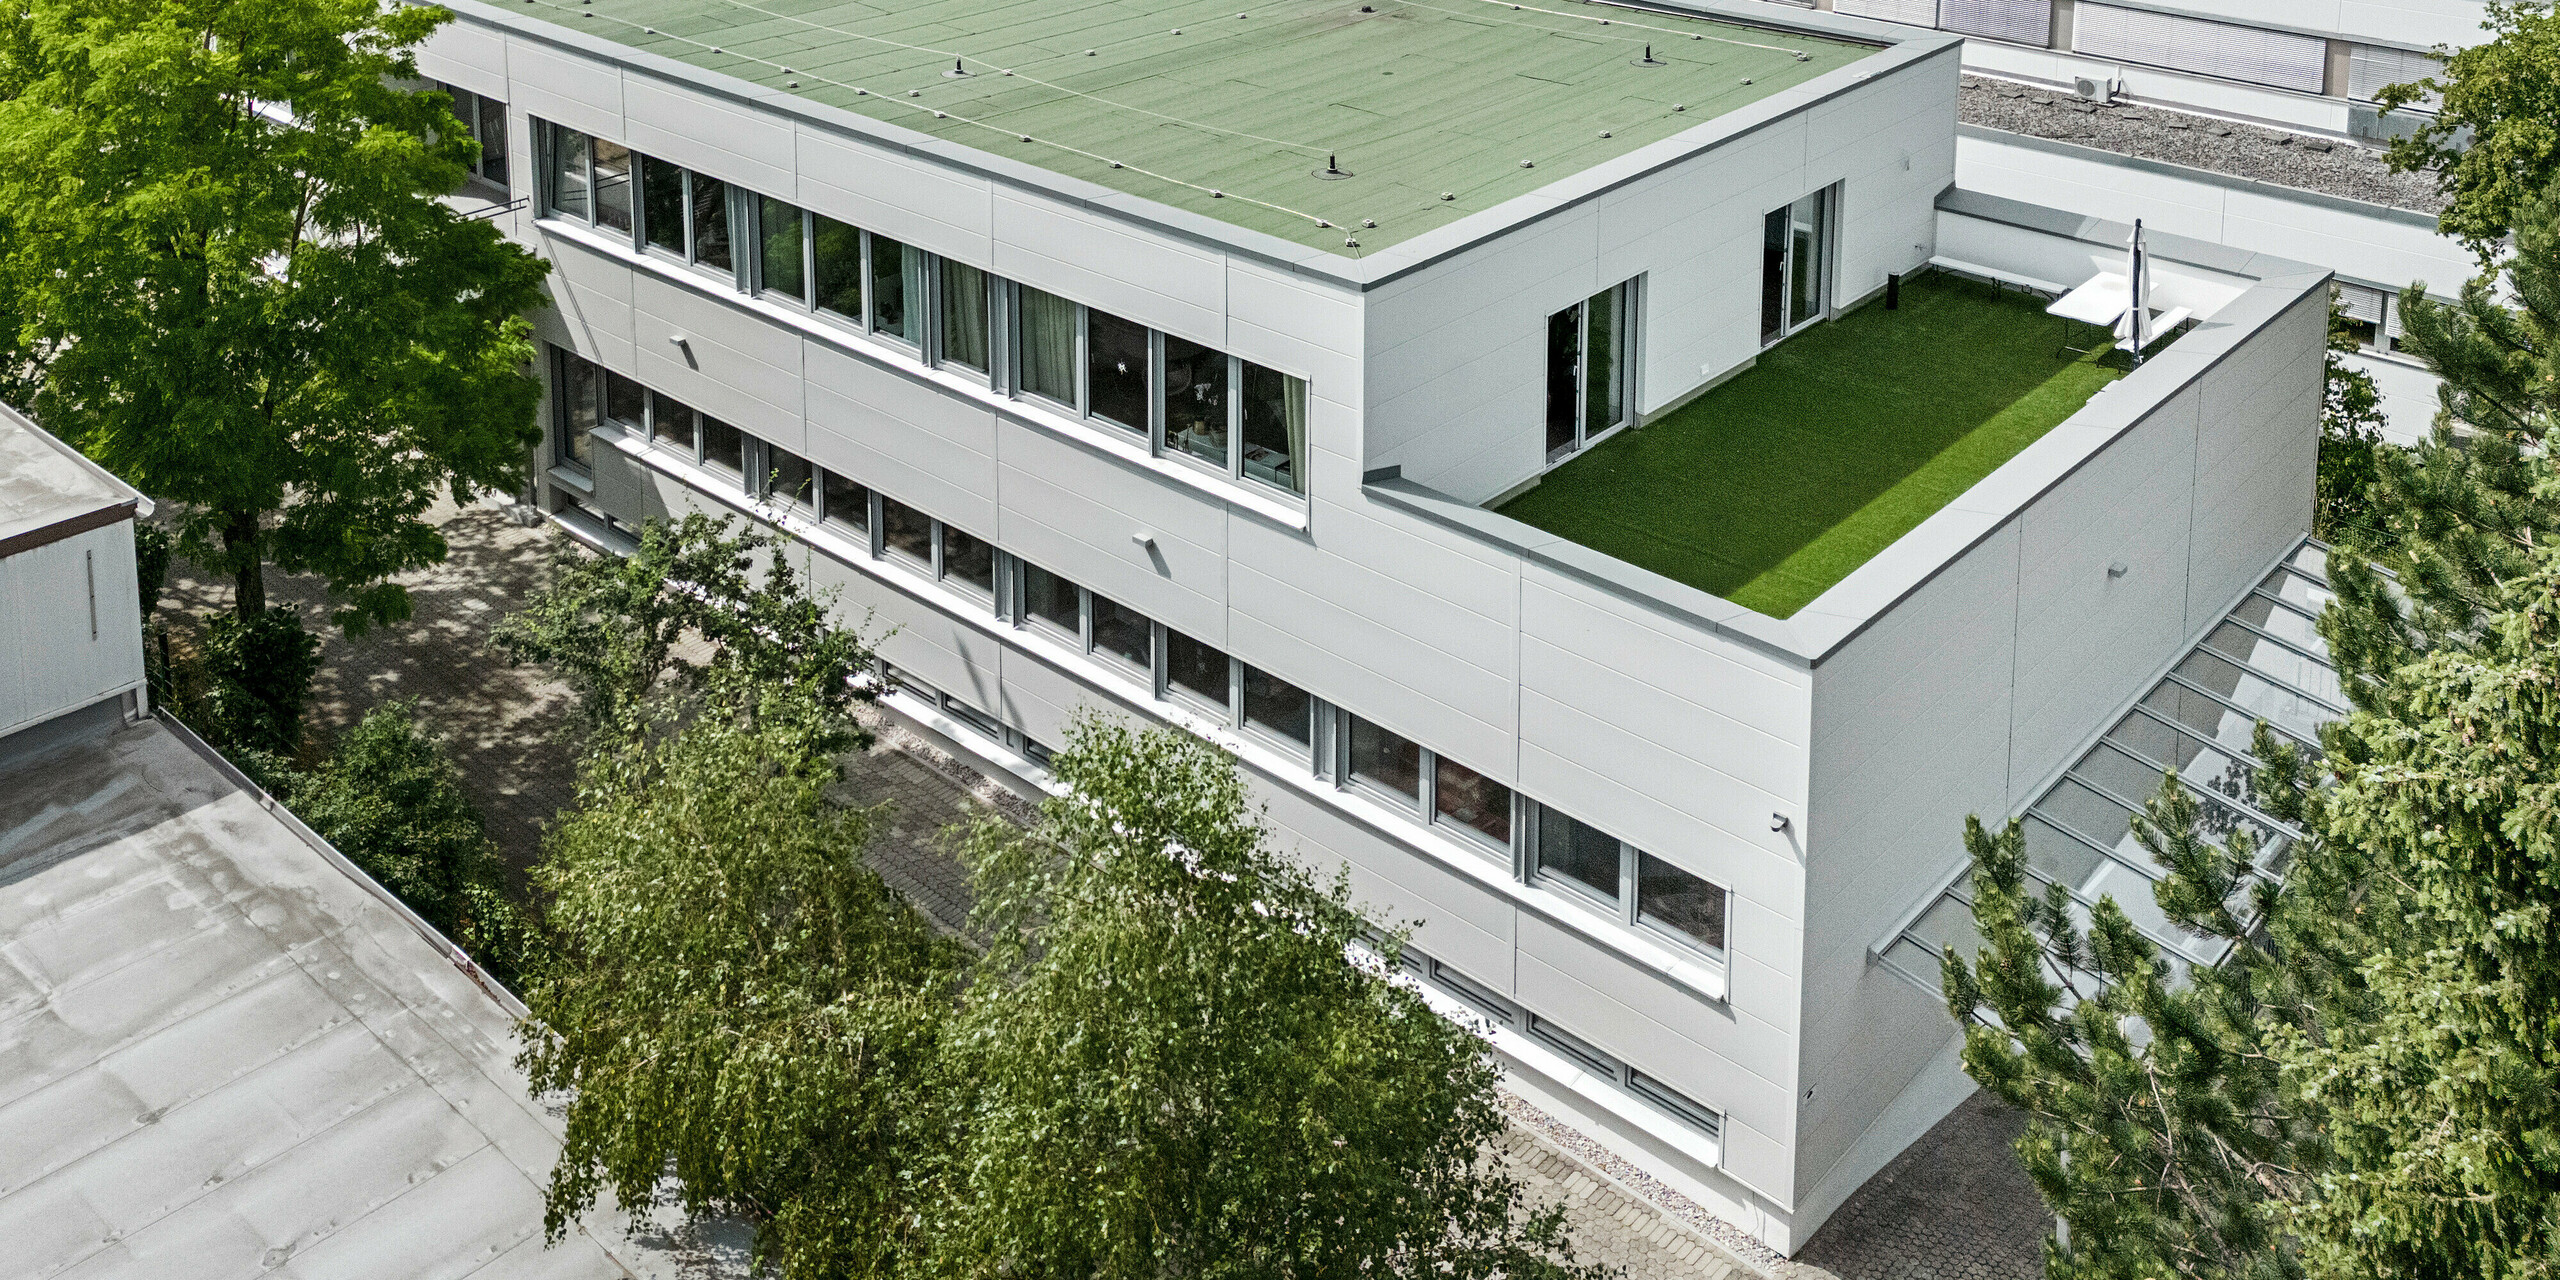 Großformatige PREFA Sidings umhüllen ein Firmengebäude in Oberschleißheim (Deutschland). Die extrabreiten Fassadenelemente aus Aluminium sind in der Farbe Prefaweiß gehalten.